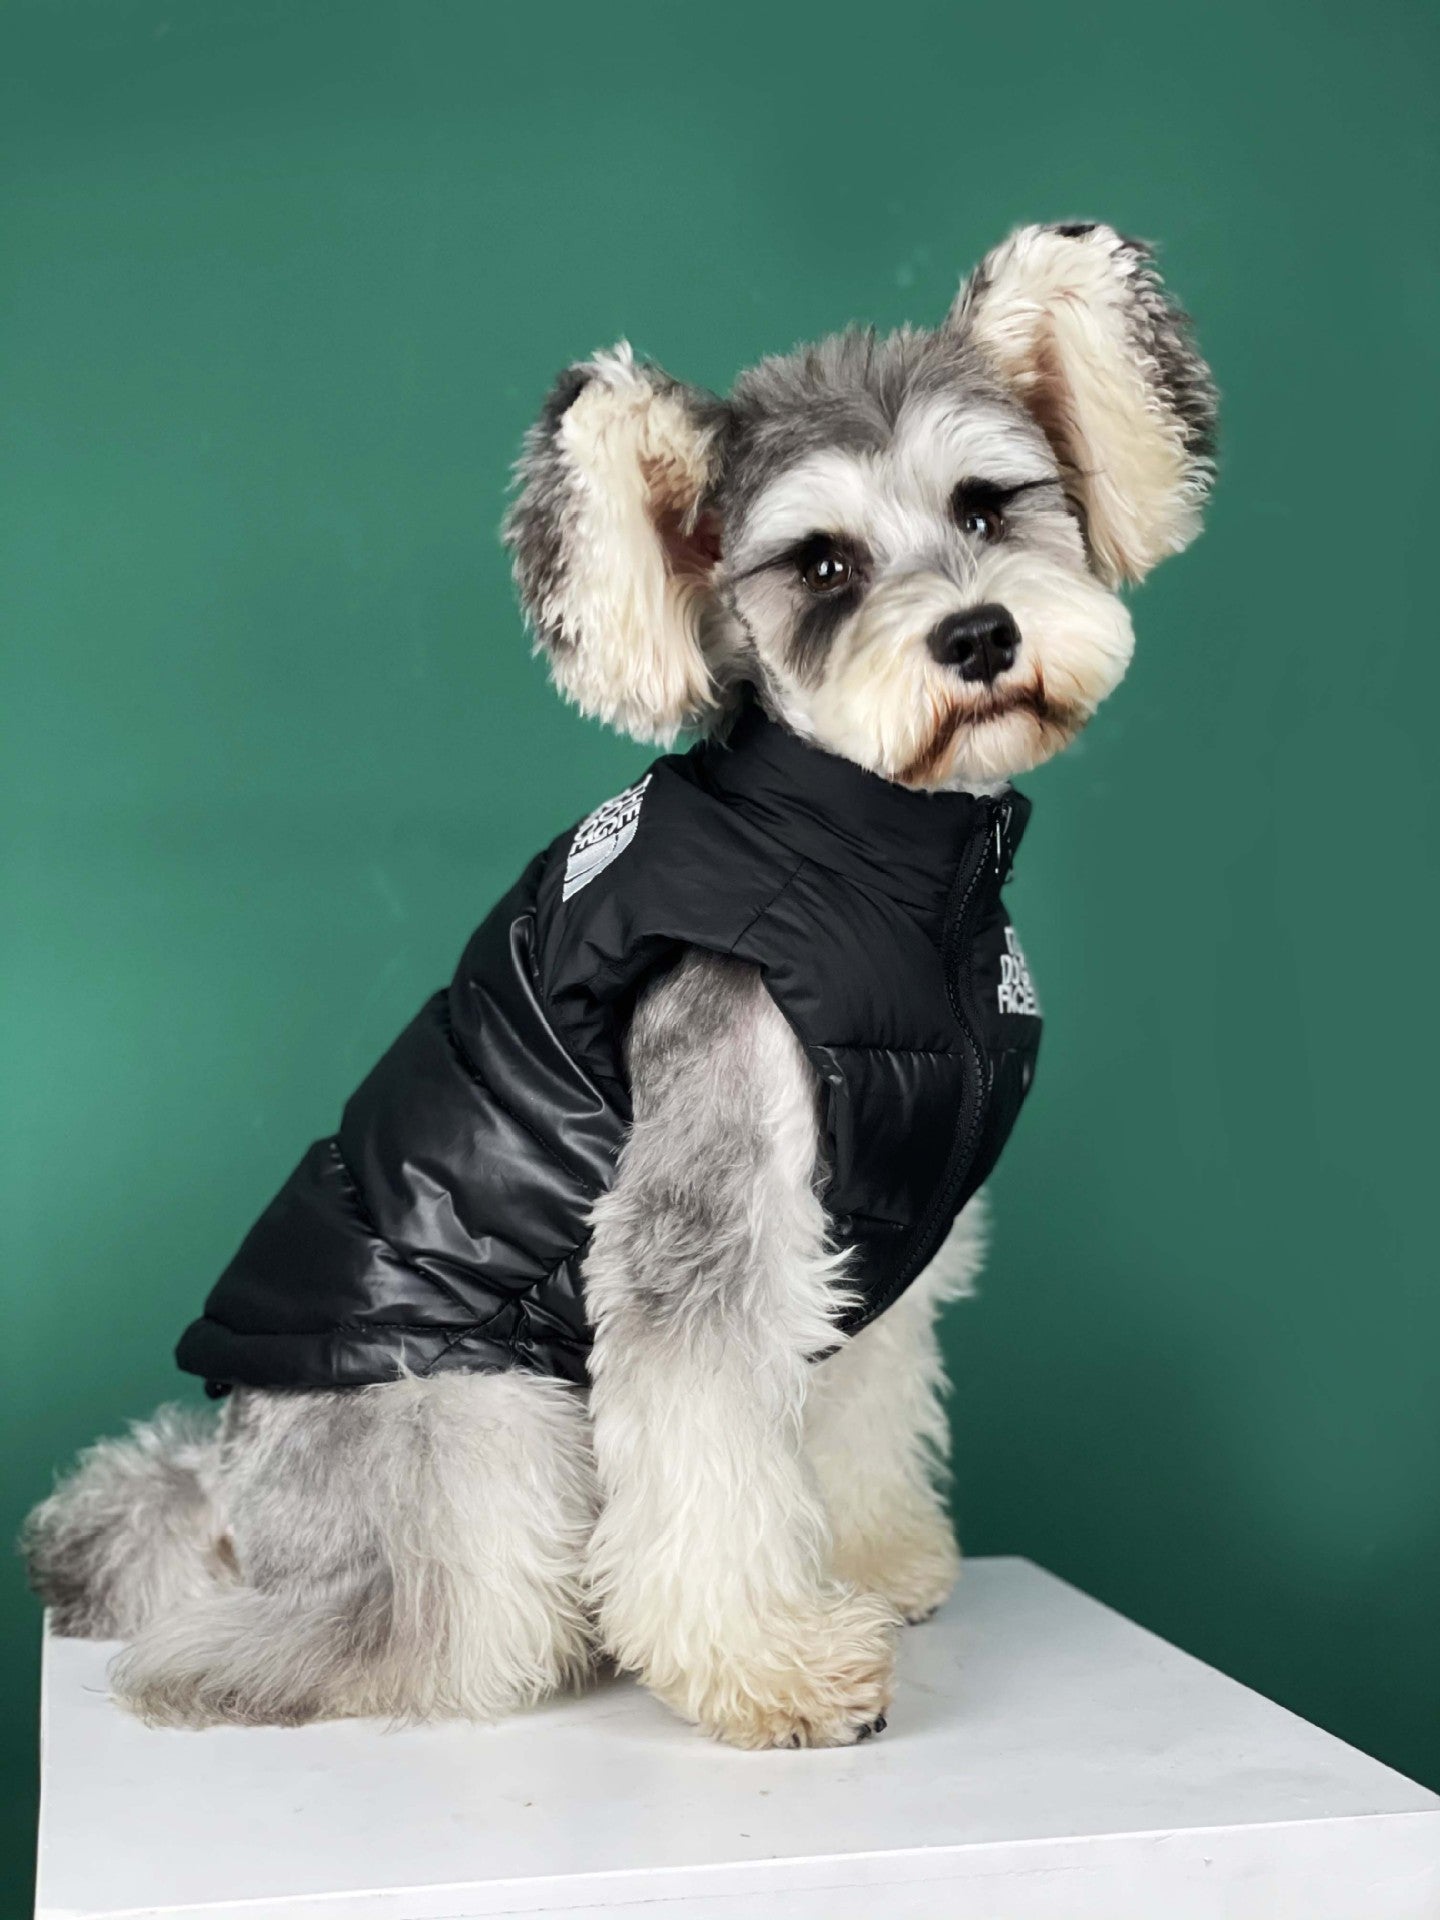 Designer Dog Jacket The Dog Face - 2023 - Puppy Streetwear Shop